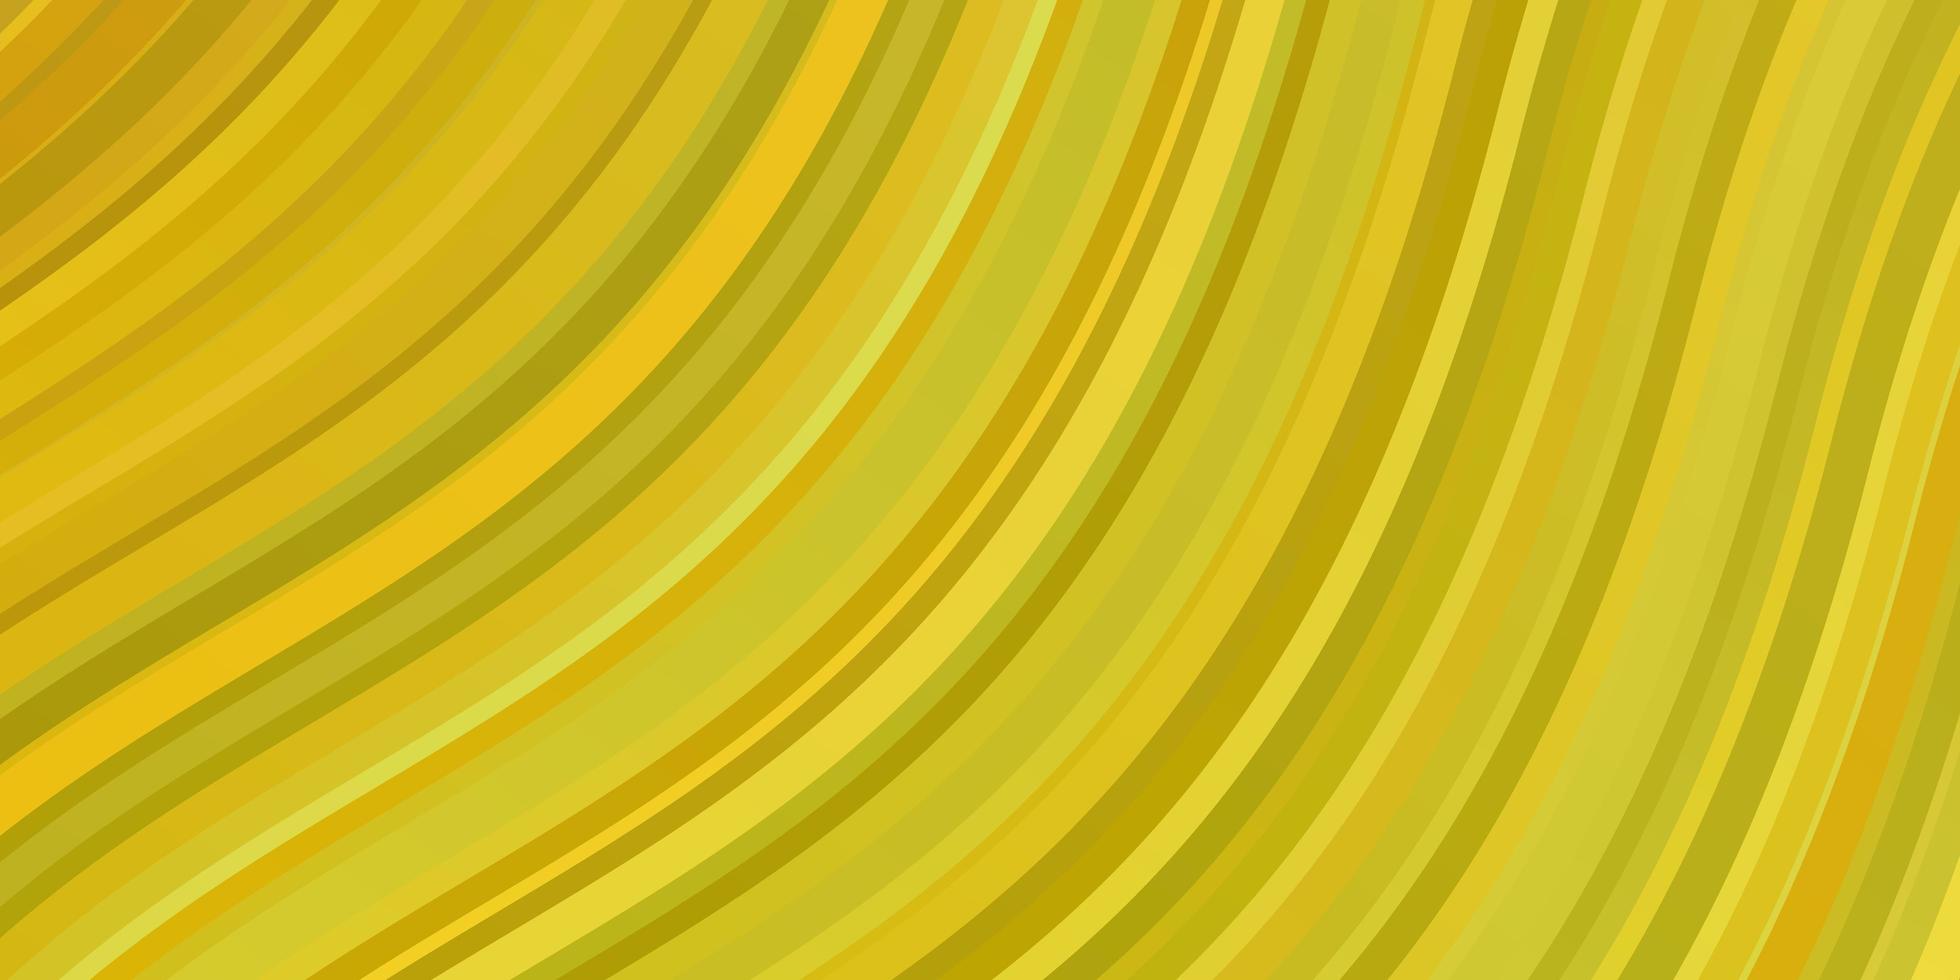 ljusgrön, gul vektorbakgrund med linjer. vektor